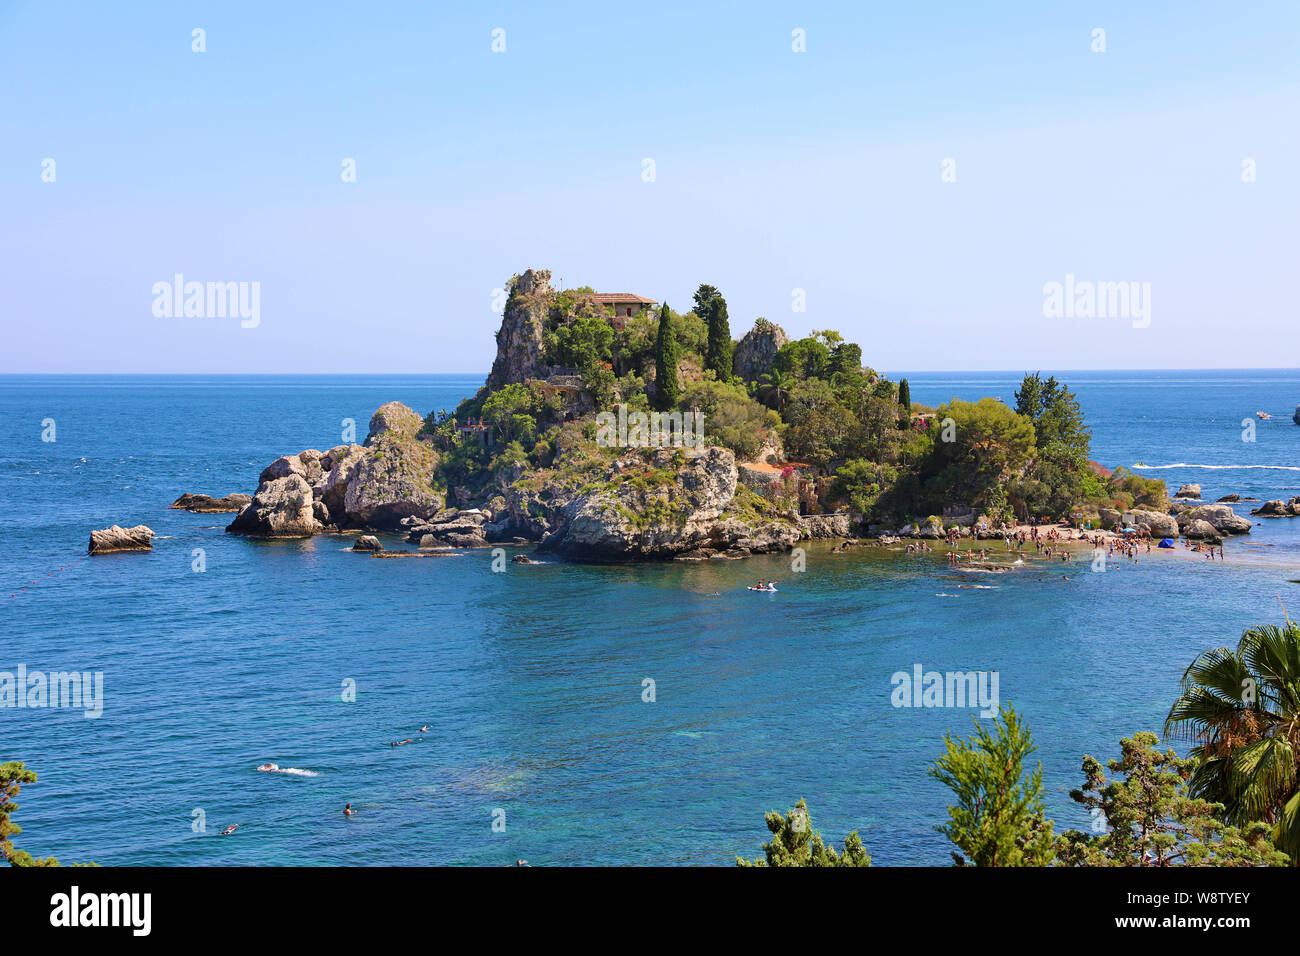 Isola Bella island of Taormina in Sicily, Italy Stock Photo